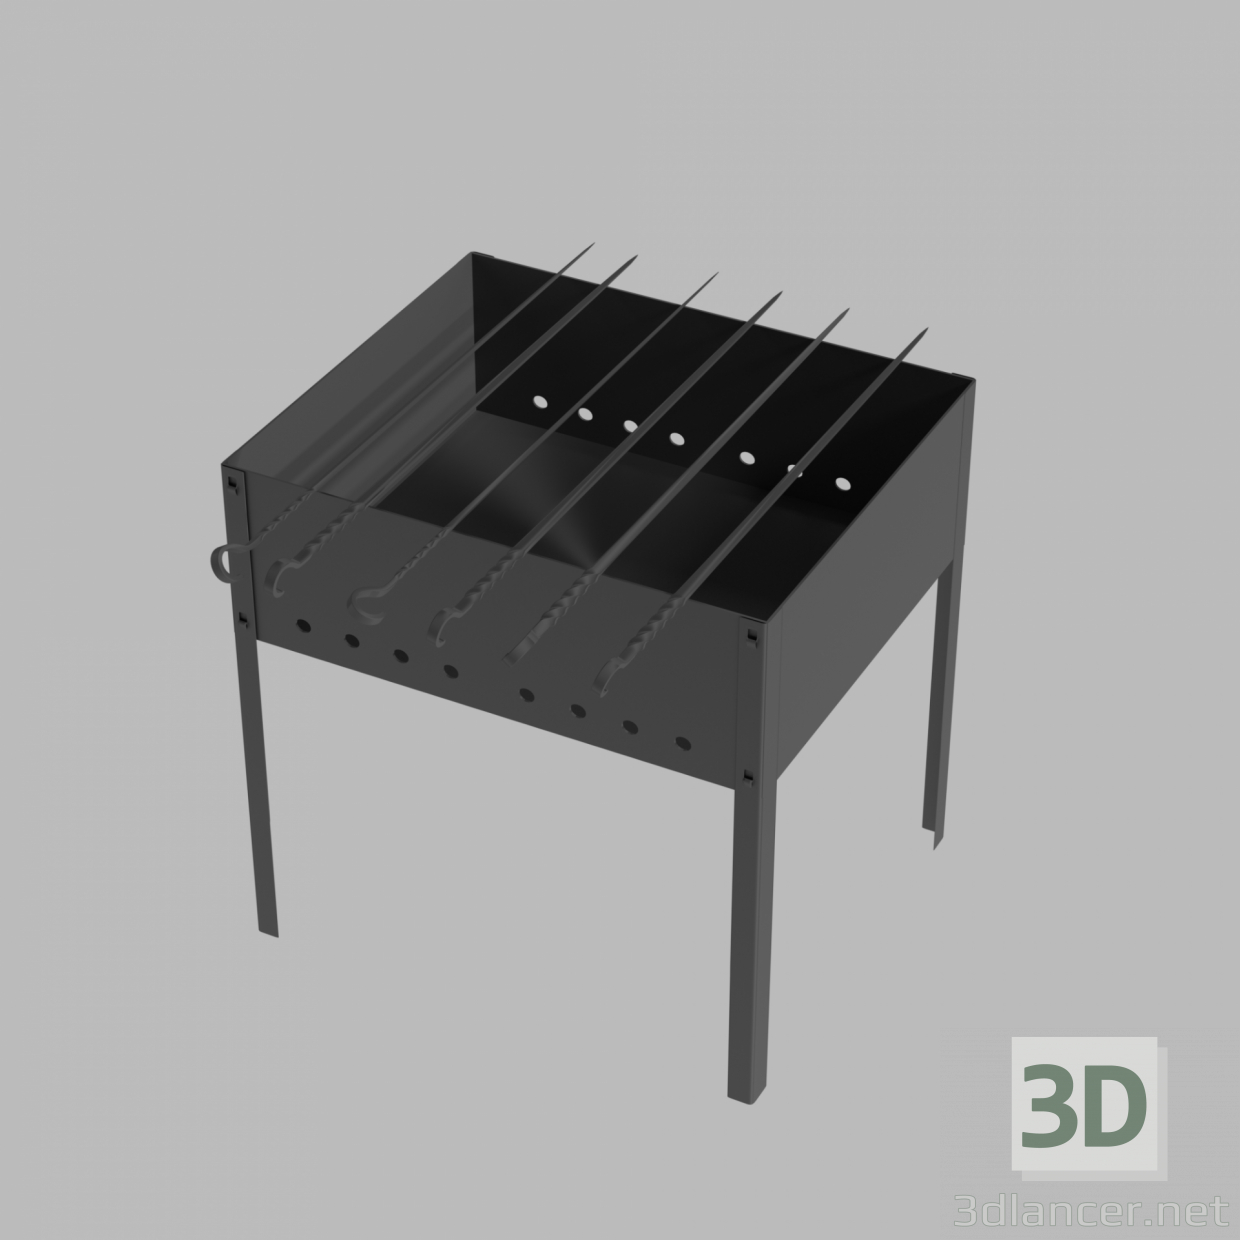 3D Şişleri ile mangal modeli satın - render